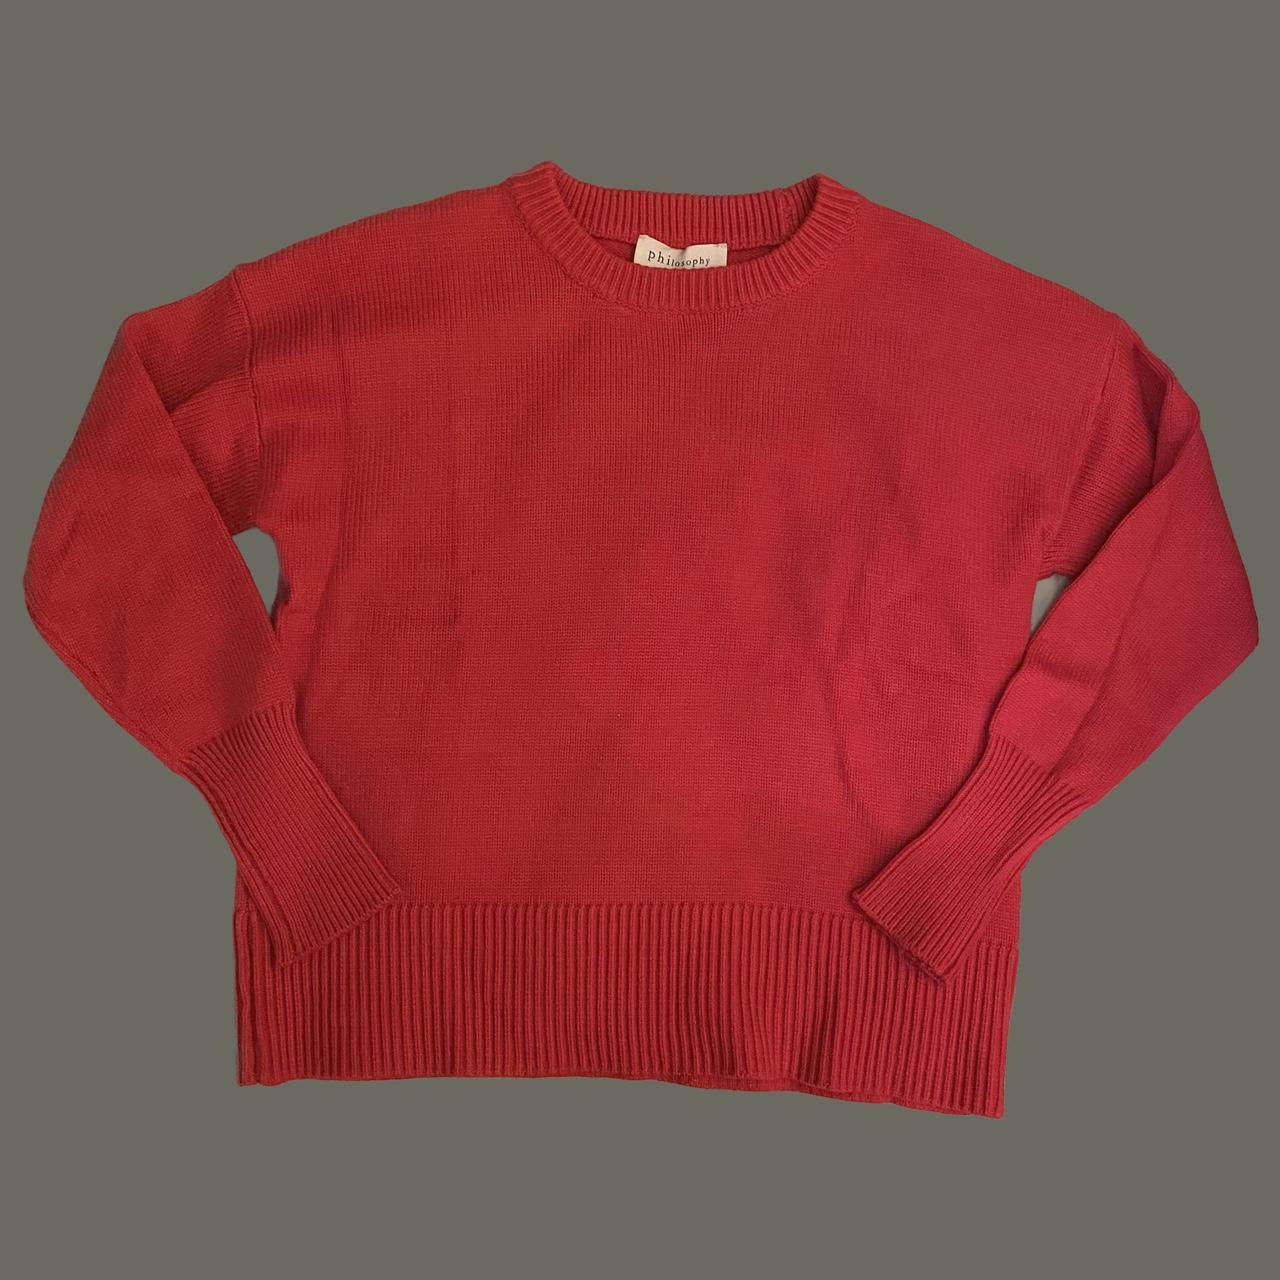 Philosophy Republic Women’s Red Sweater. Beautiful... - Depop